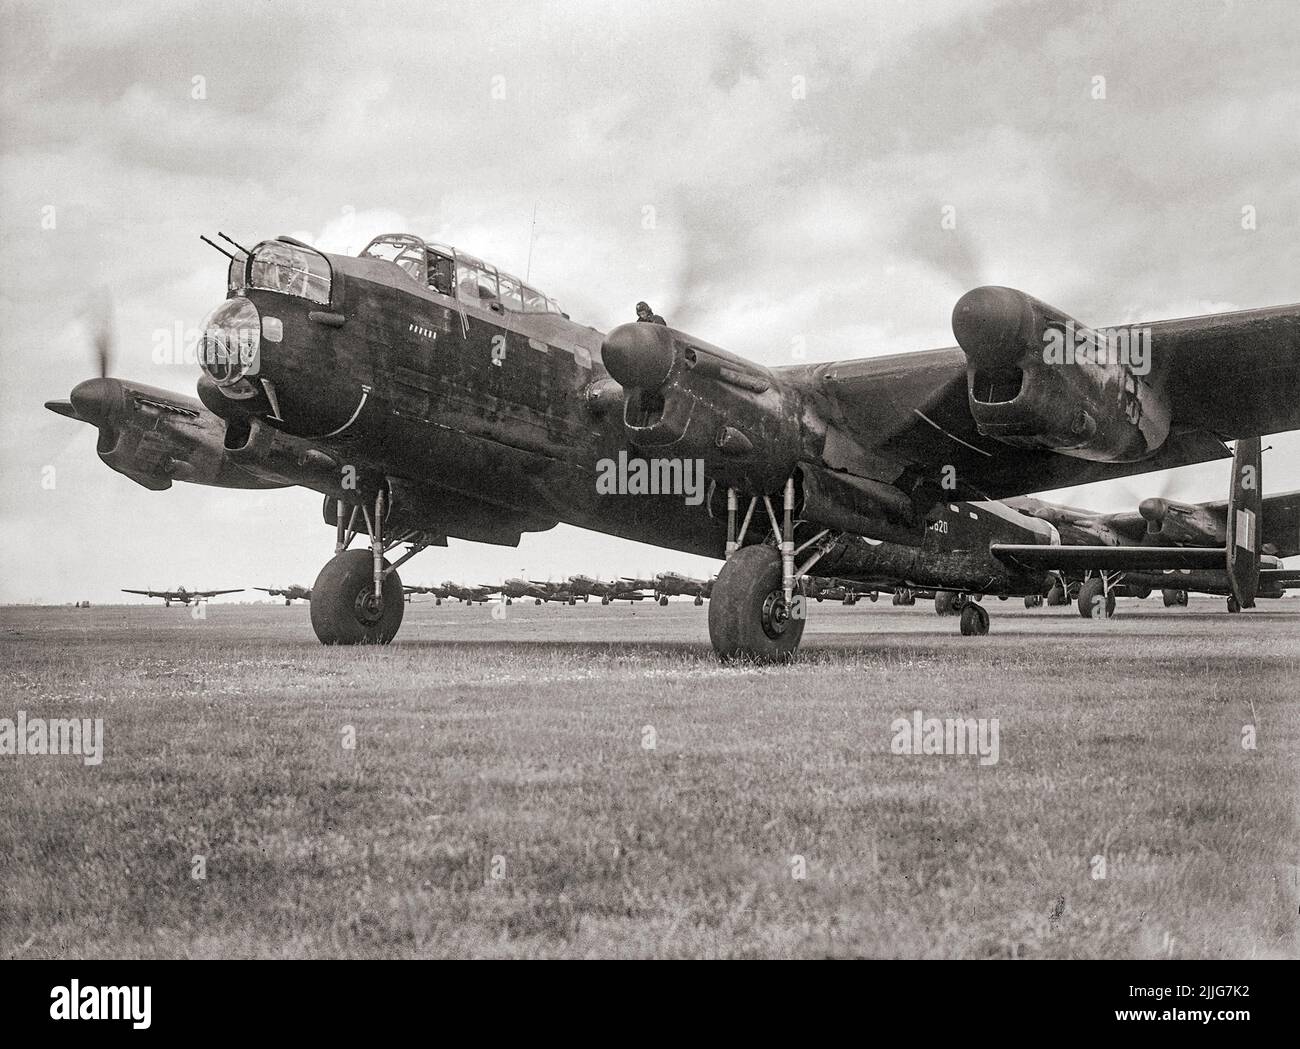 Avro Lancaster B Mark I, R5620 del Escuadrón nº 83 RAF, lidera la cola de aviones que esperan despegar de Scampton, Lincolnshire, en la incursión de los 'Mil-Bomberos' a Bremen, Alemania. Este bombardero pesado británico de cuatro motores fue el único avión perdido por el escuadrón esa noche. Foto de stock